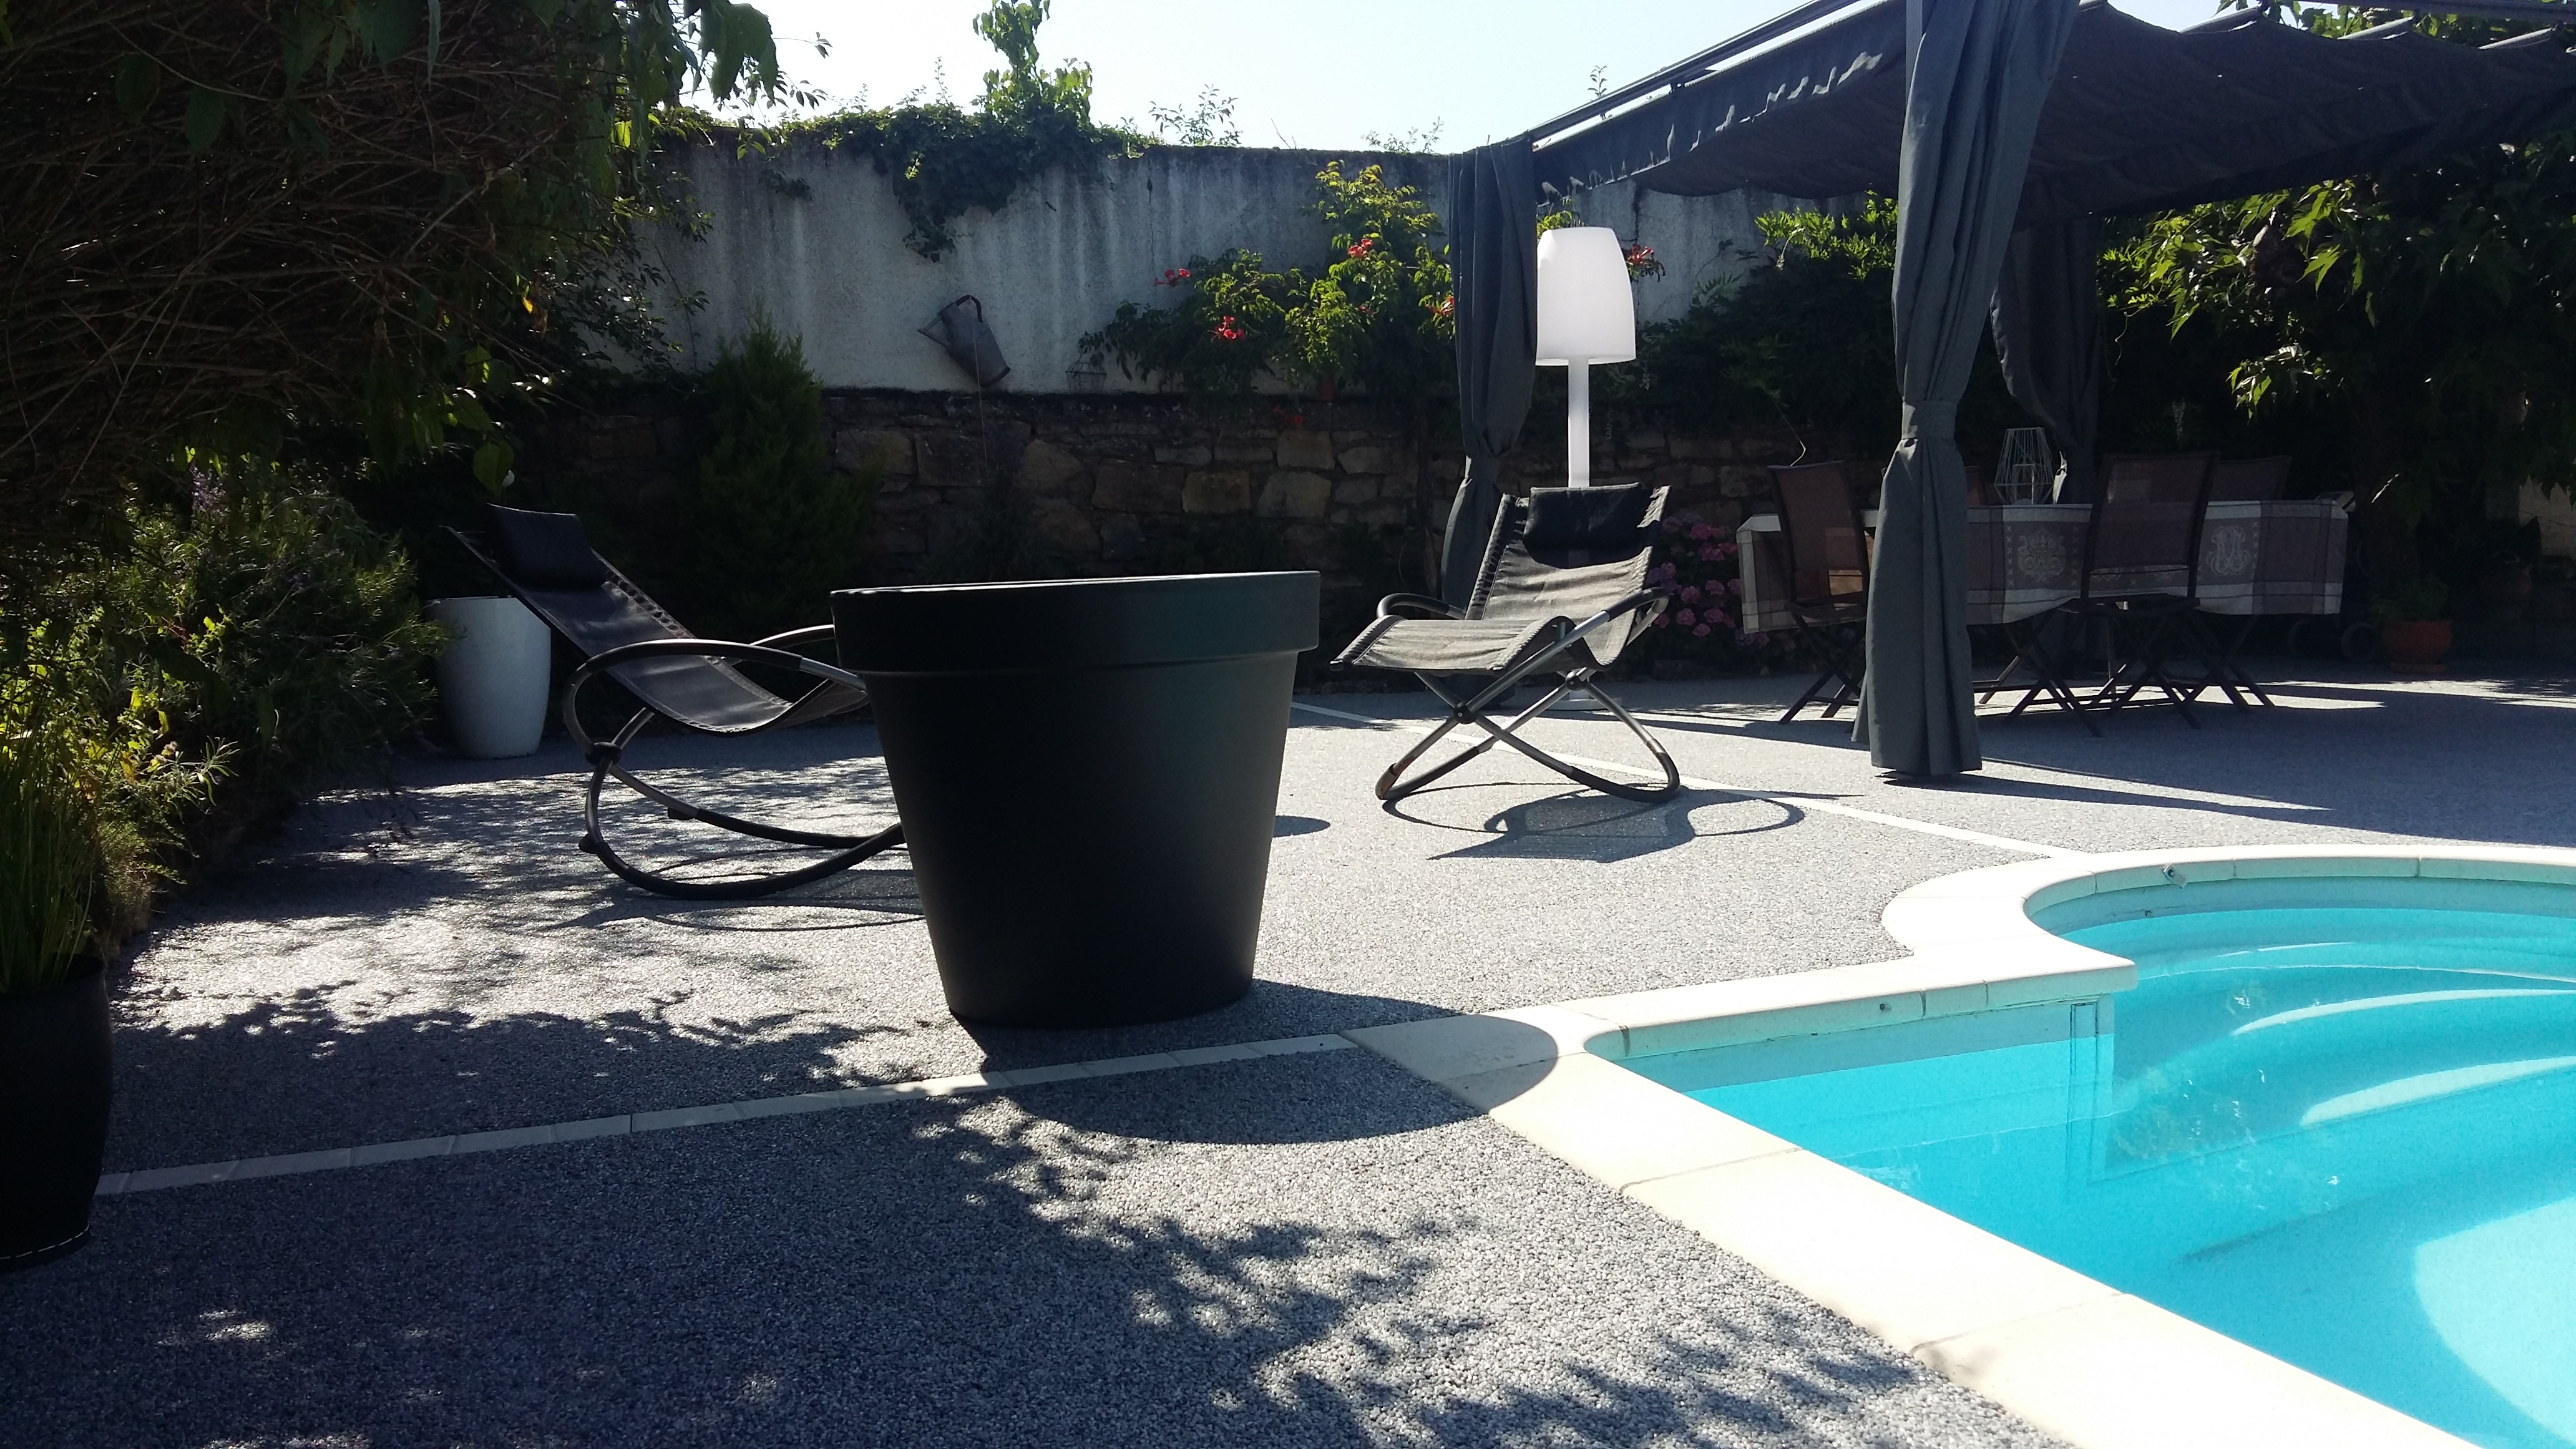 Conception Plage de piscine en Hydrostar - Entreprise Chierici - Aveyron ralise le 21/09/2018